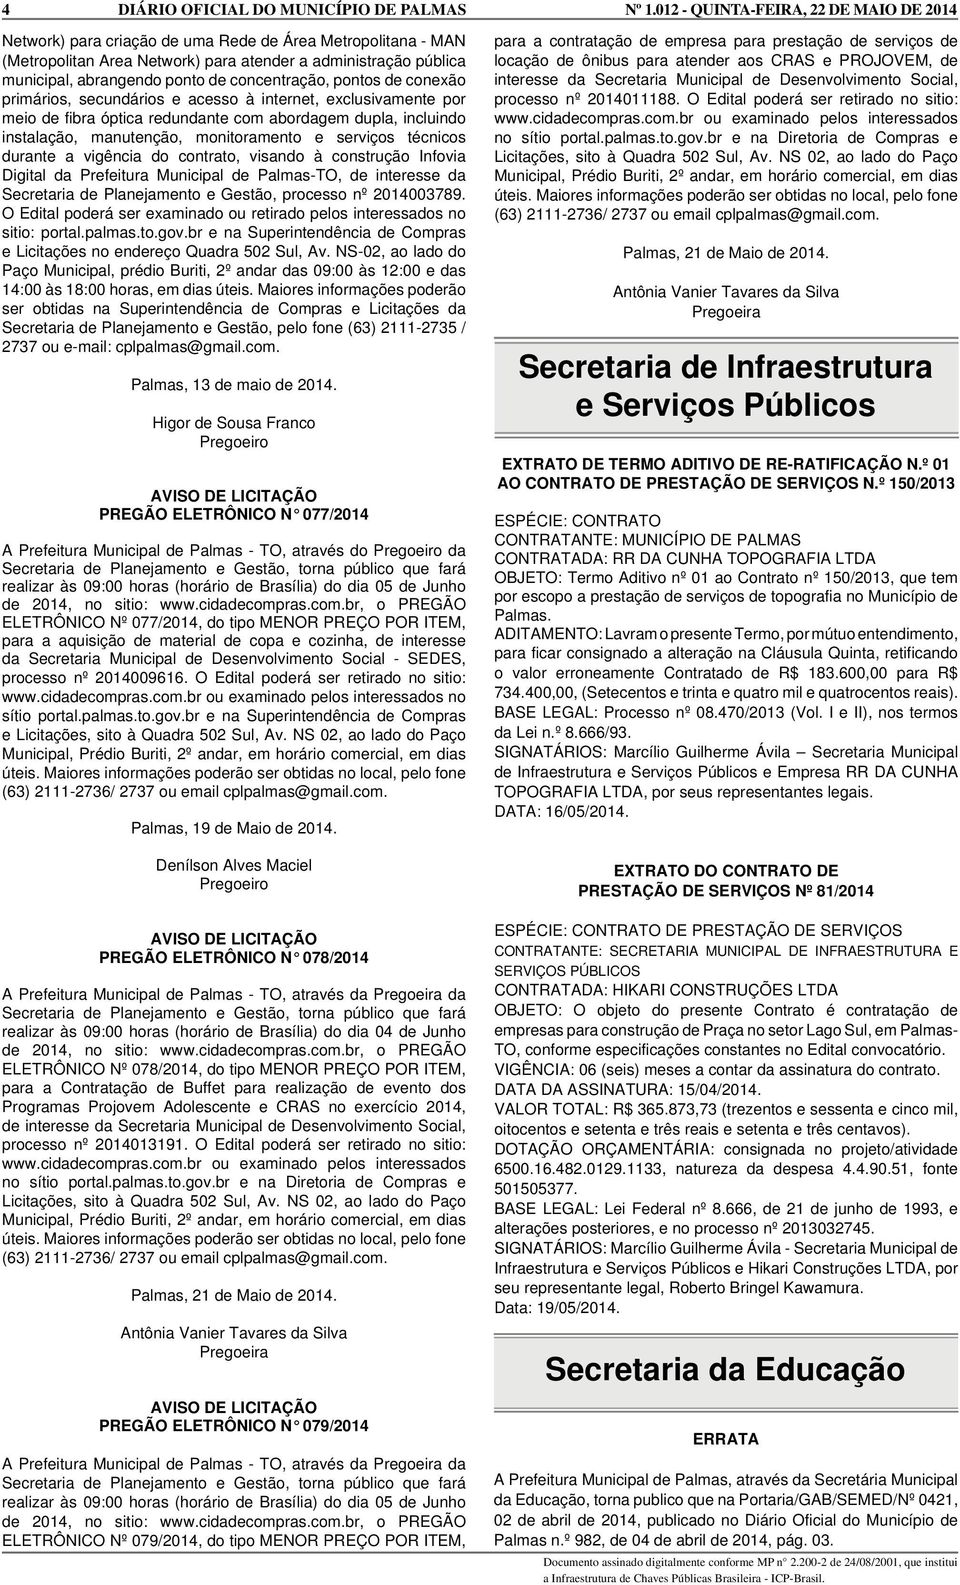 vigência do contrato, visando à construção Infovia Digital da Prefeitura Municipal de Palmas-TO, de interesse da Secretaria de Planejamento e Gestão, processo nº 2014003789.